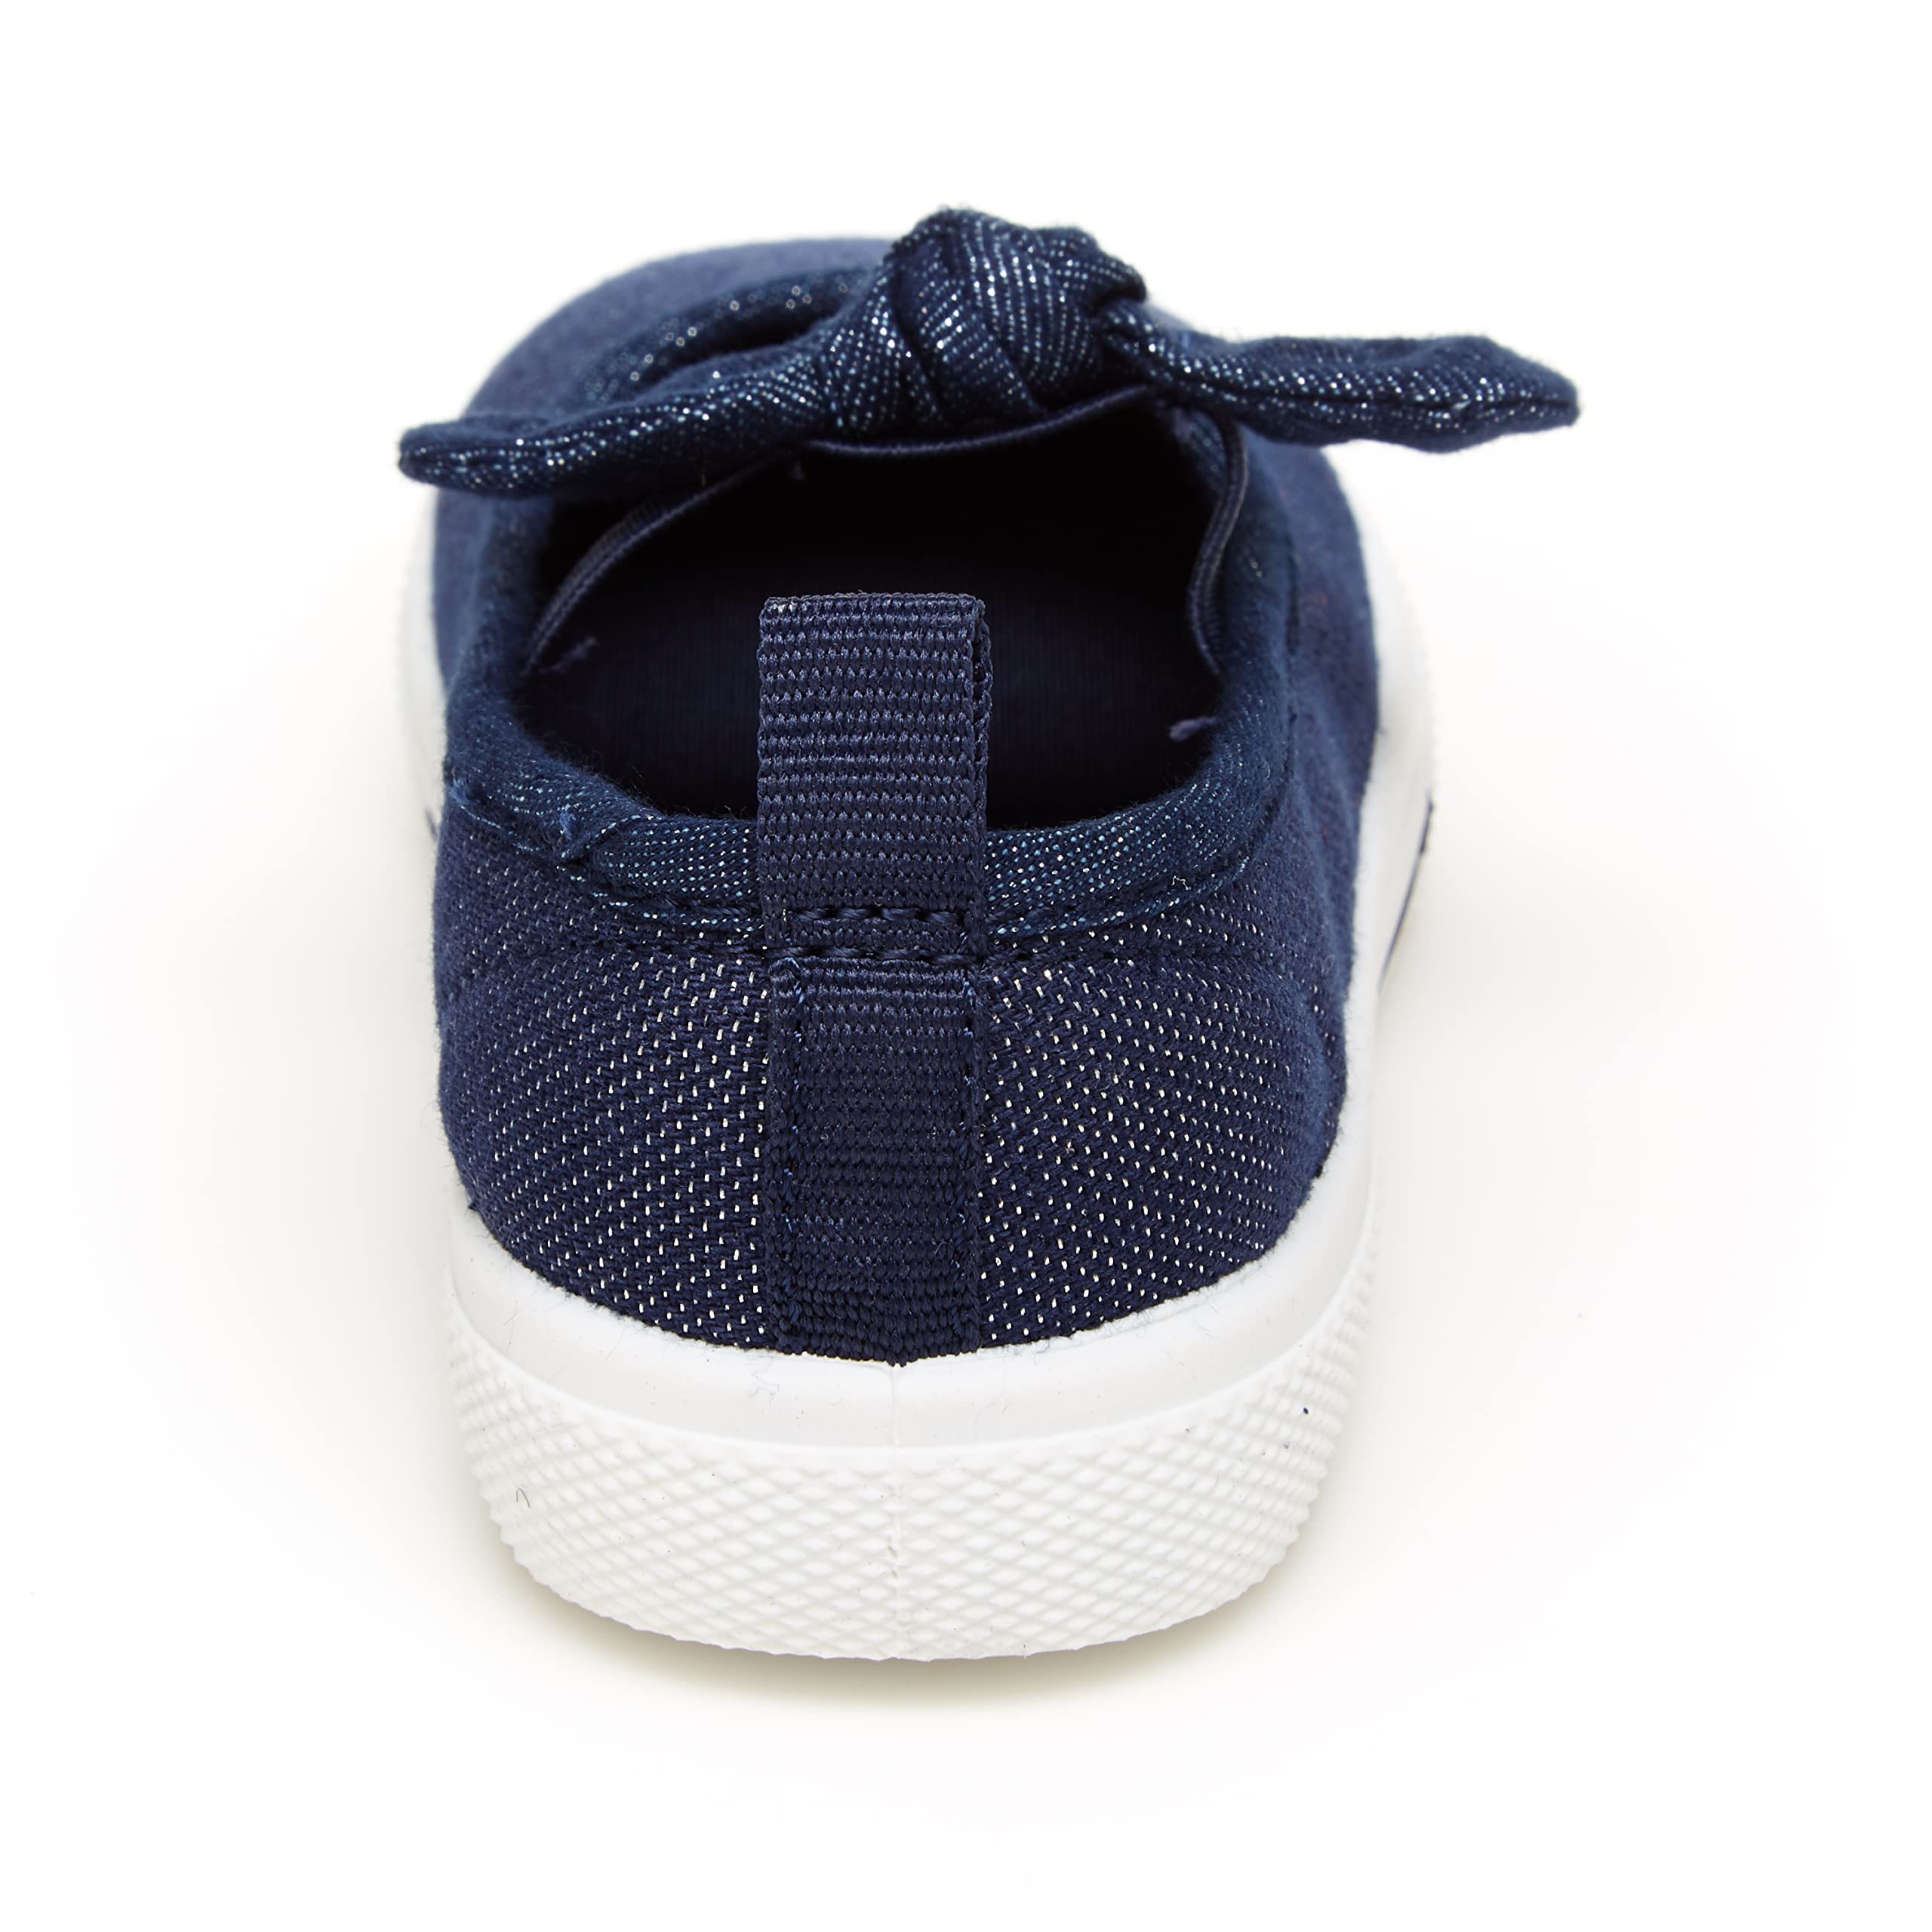 Carter's Unisex-Child Capri Slip-On Sneaker